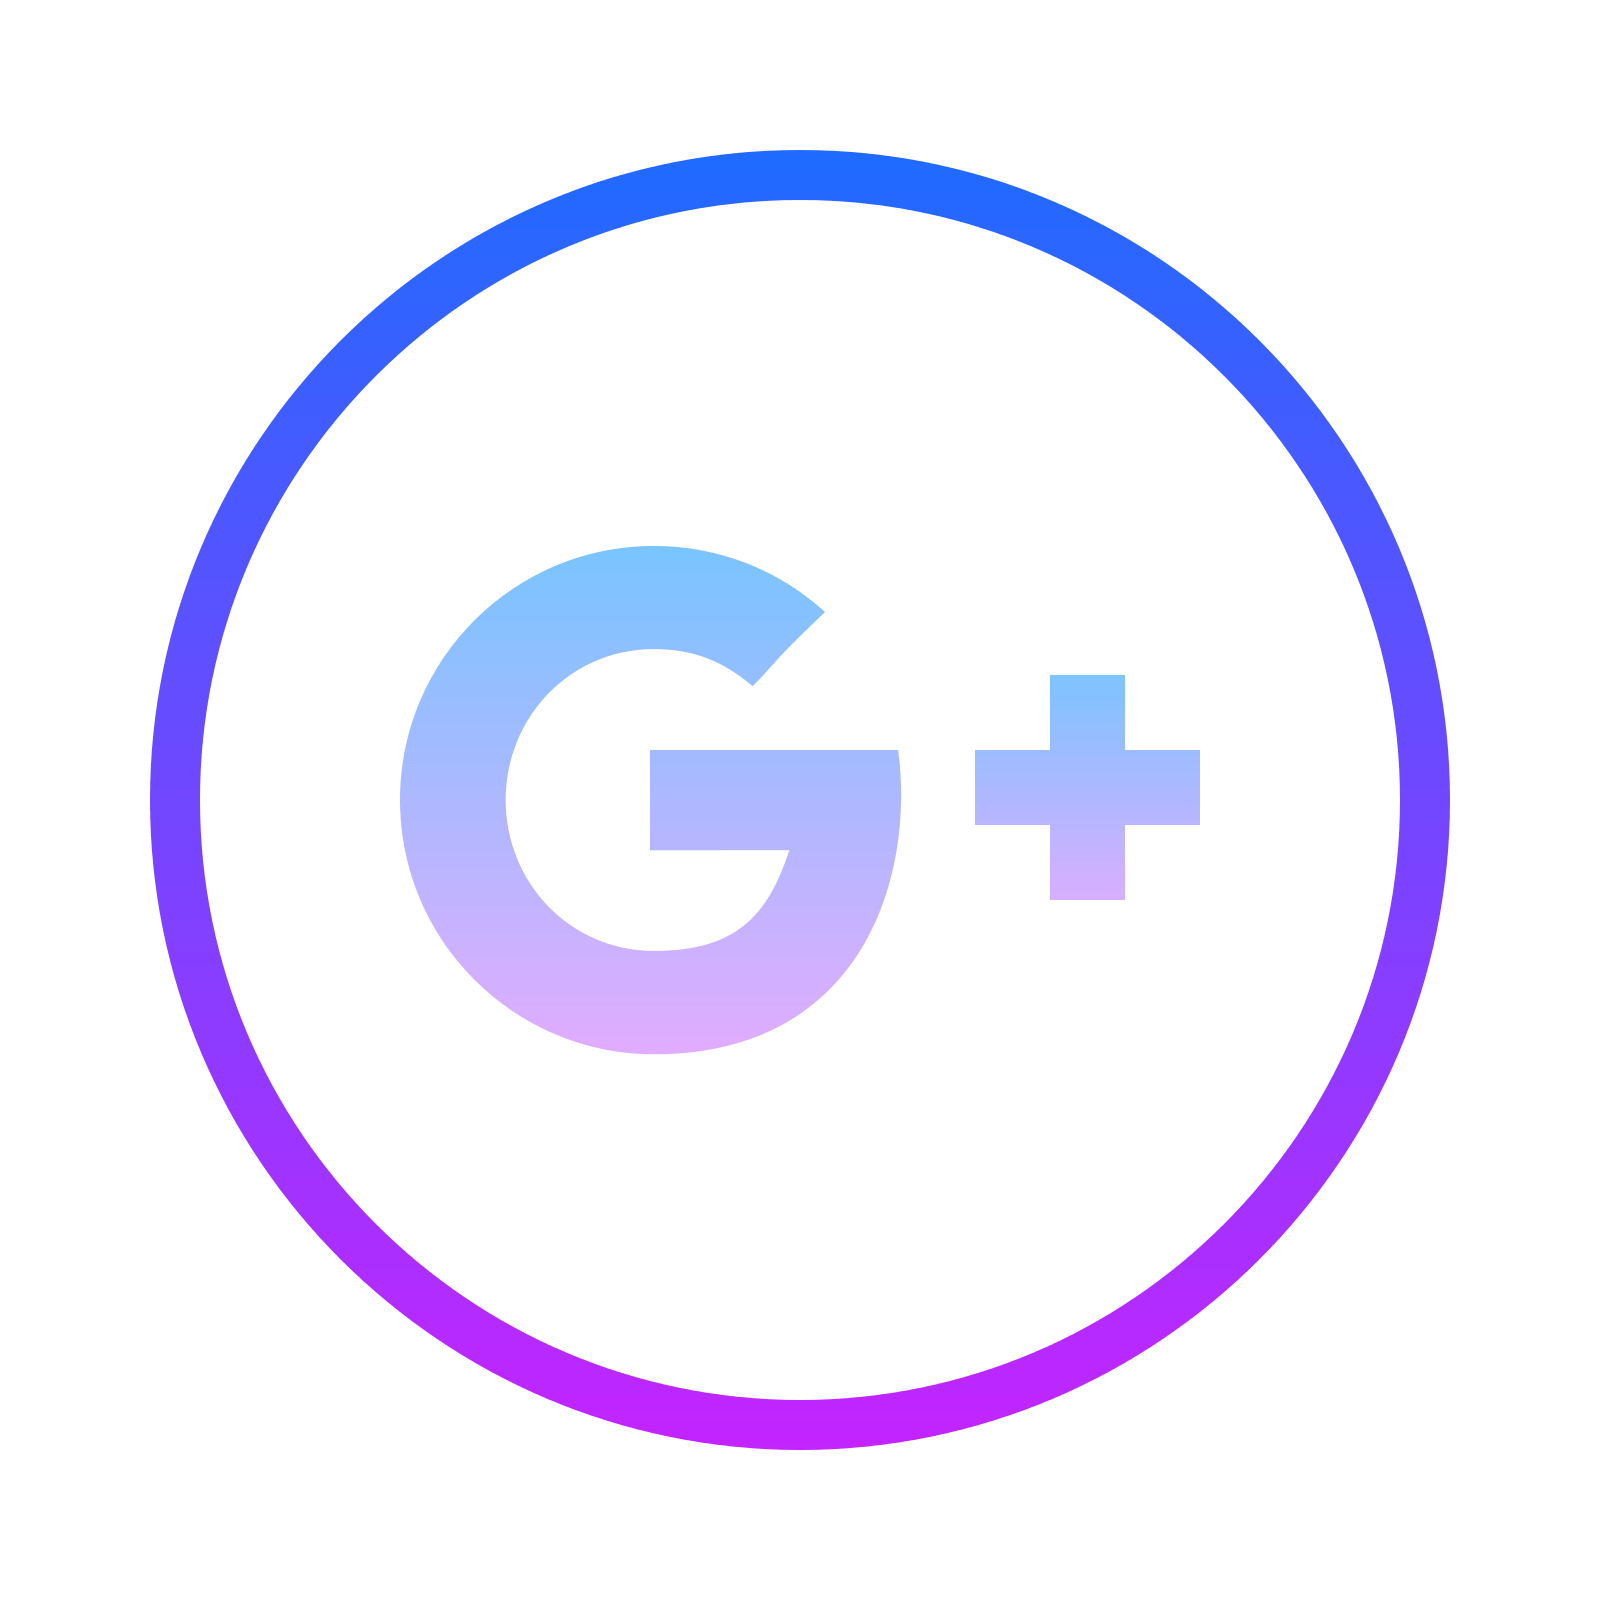 New Google Plus Circle Logo - Google Plus Png Logo - Free Transparent PNG Logos